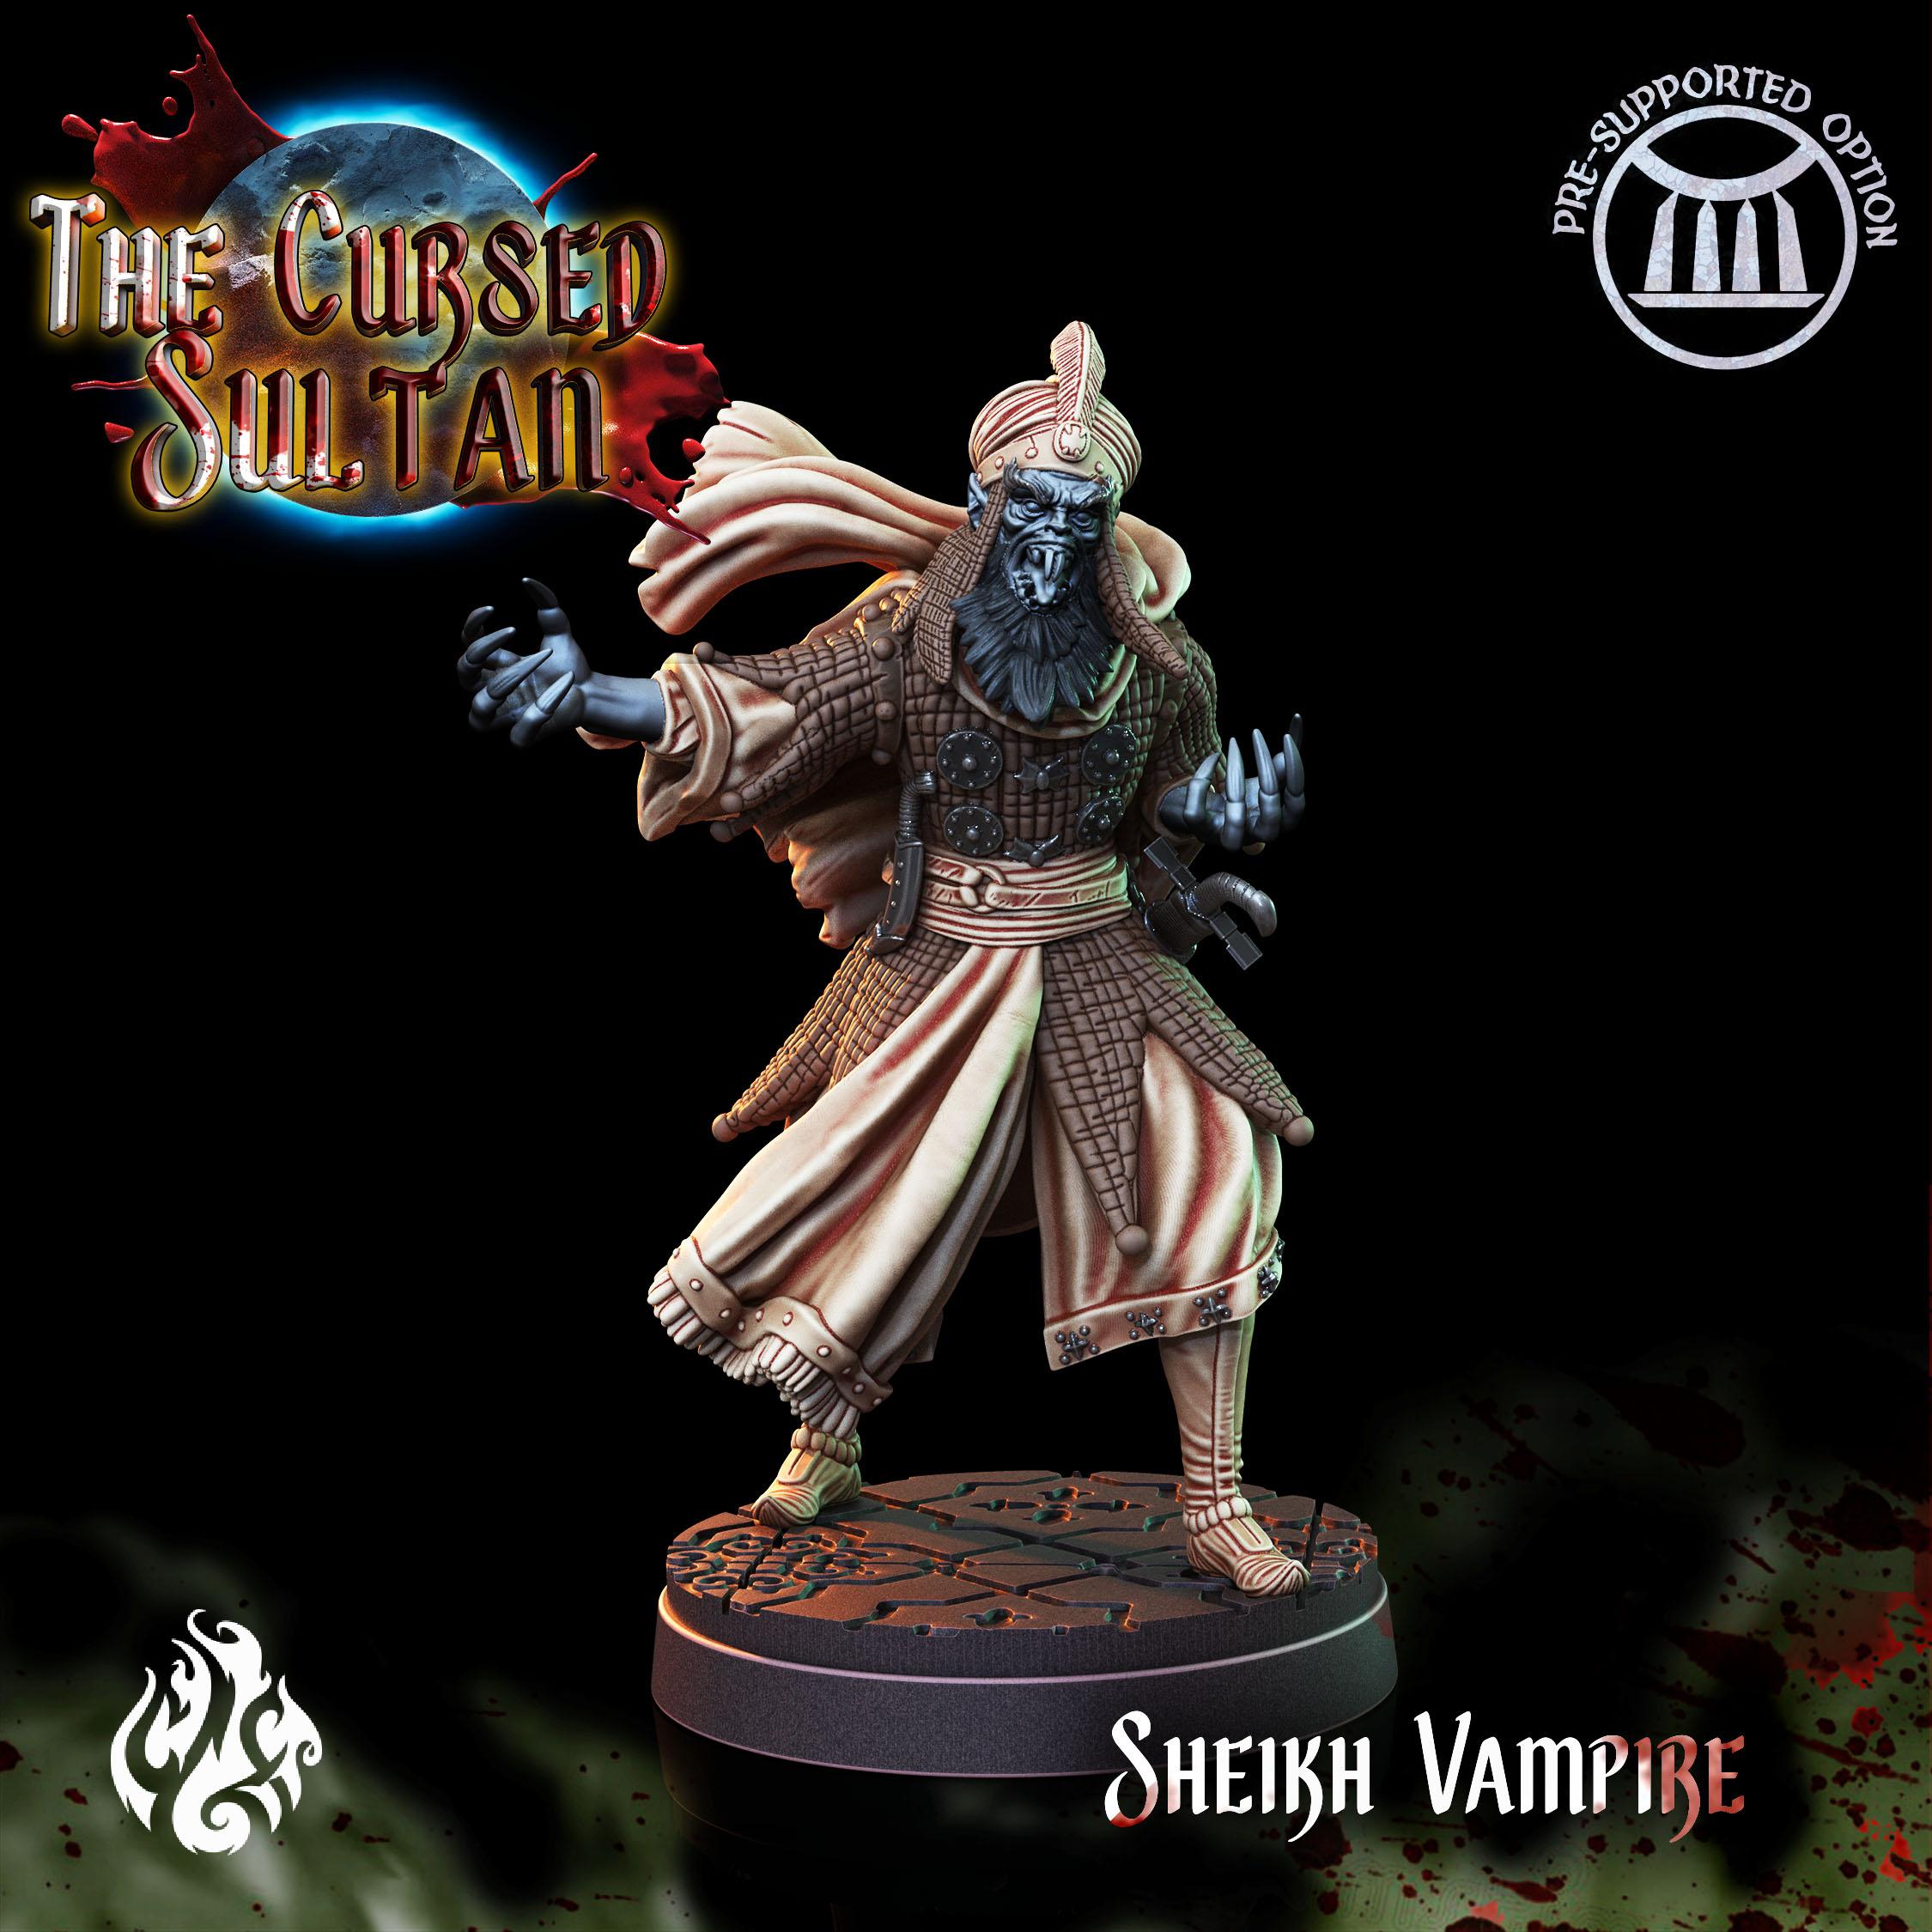 Sheikh Vampire 3d model